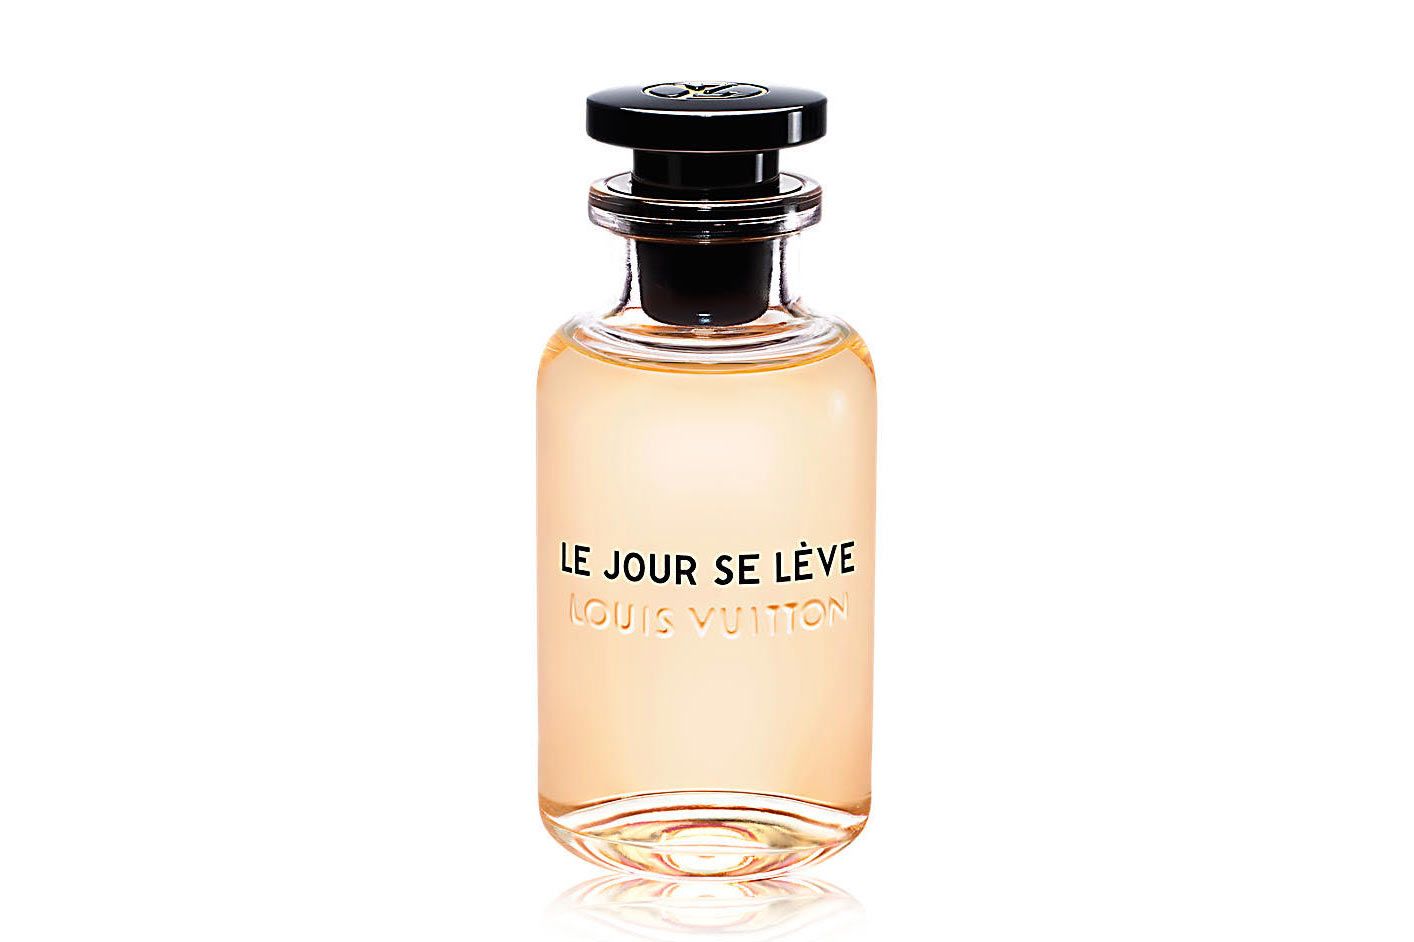 Louis Vuitton's Jacques Cavallier Belletrud: A Poet Of Perfume